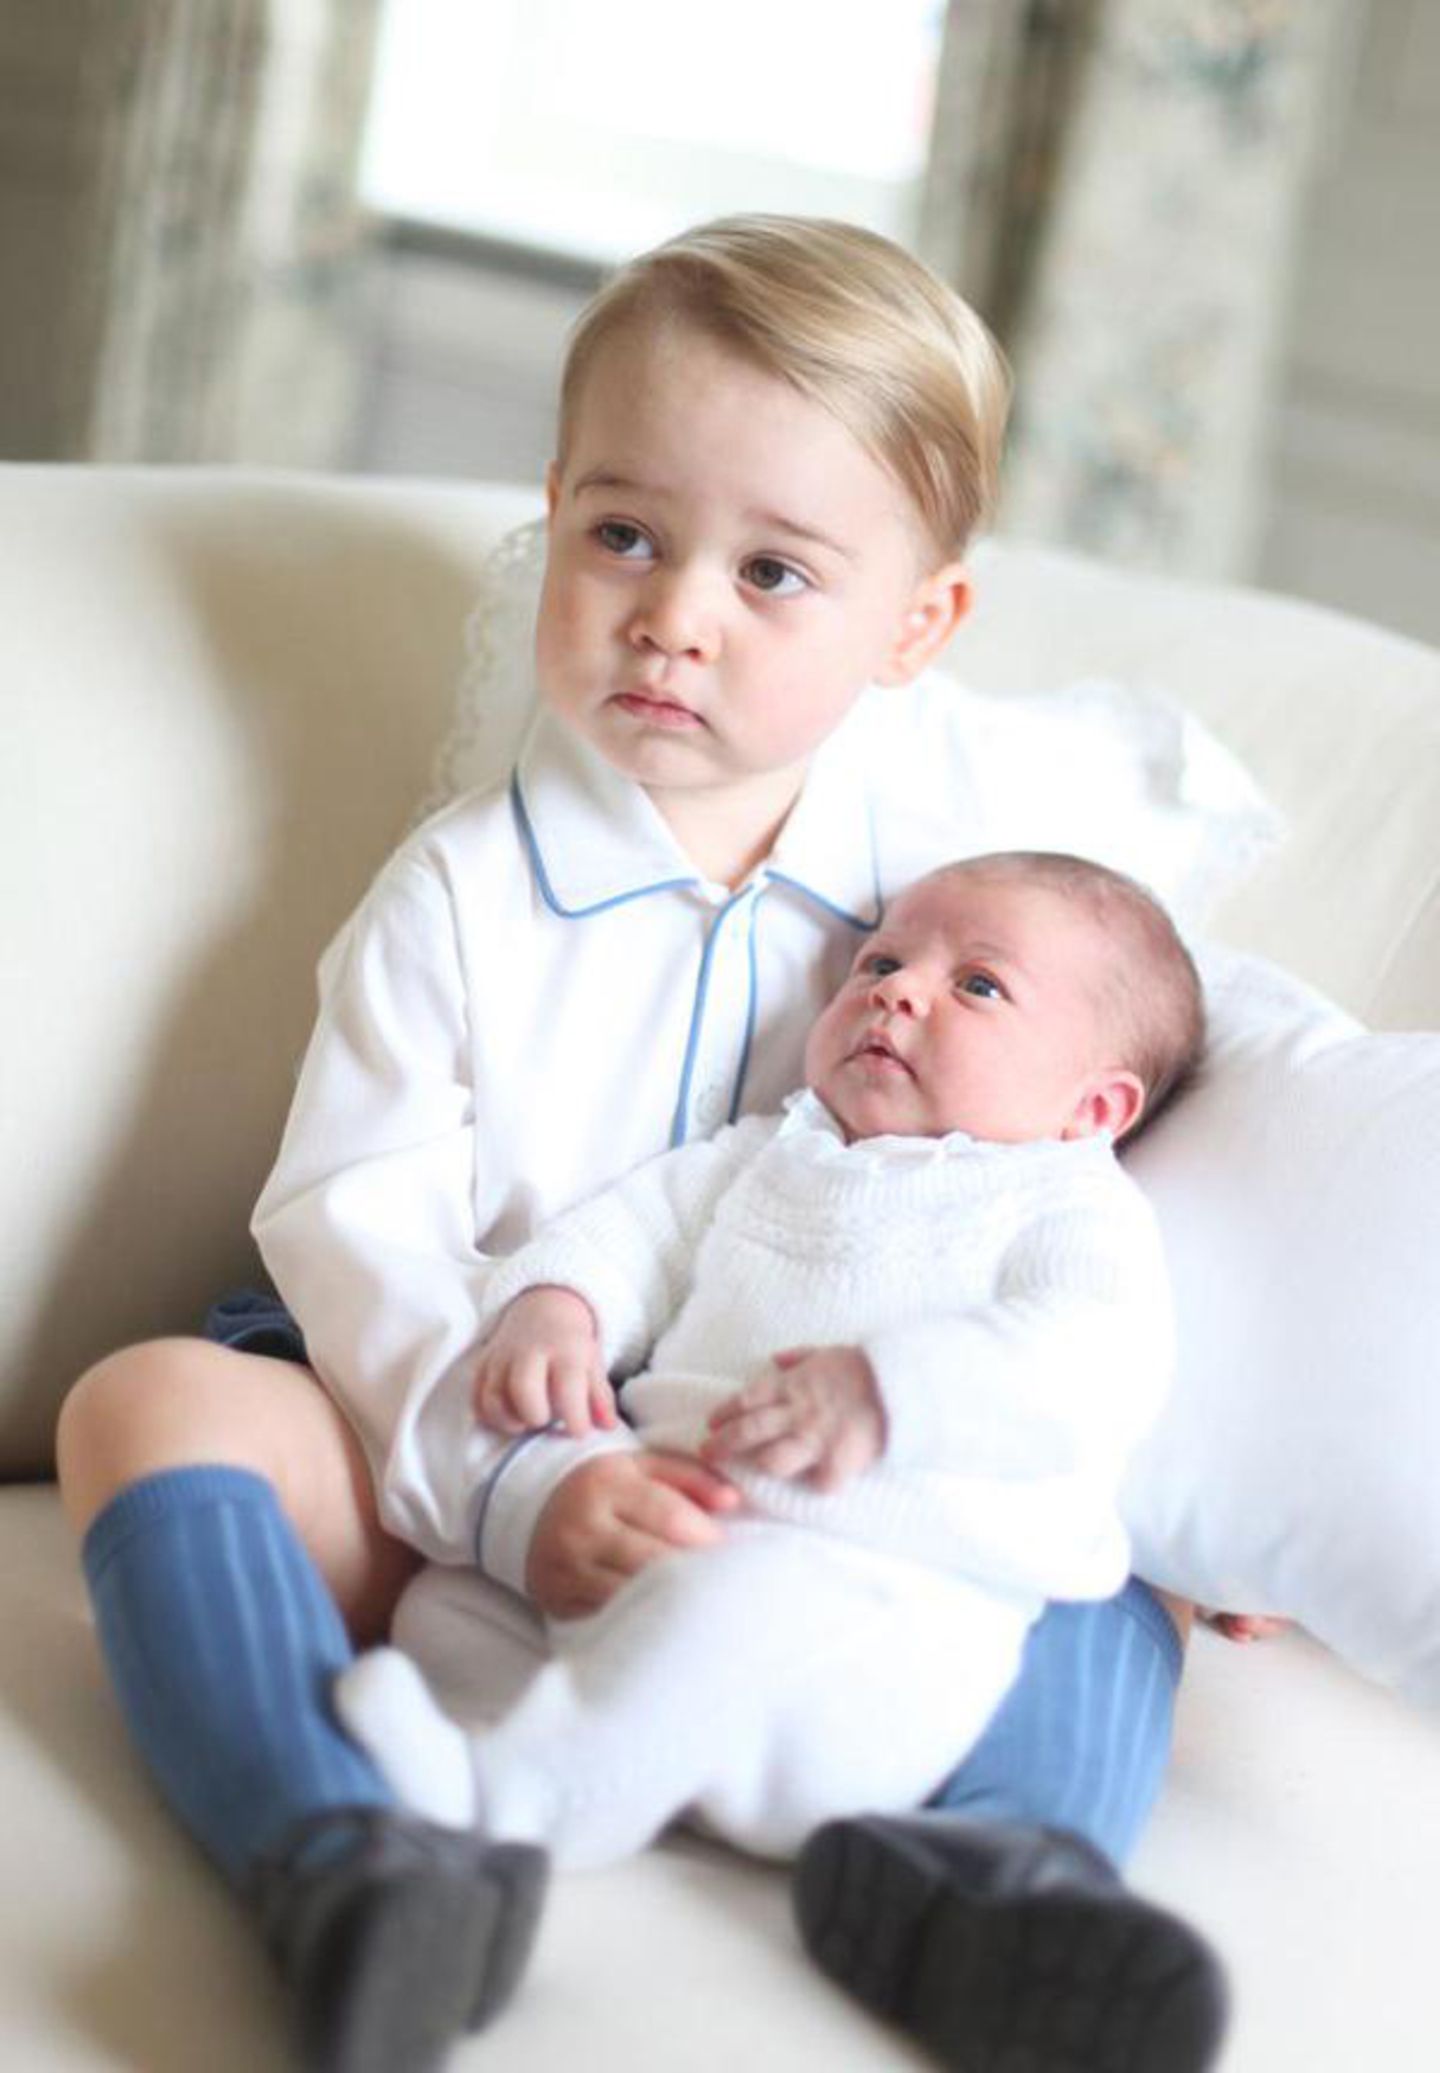 Der Mini-Prinz schaut ein wenig ratlos ... Vielleicht überlegt George, was er mit seiner kleinen Schwester machen soll?